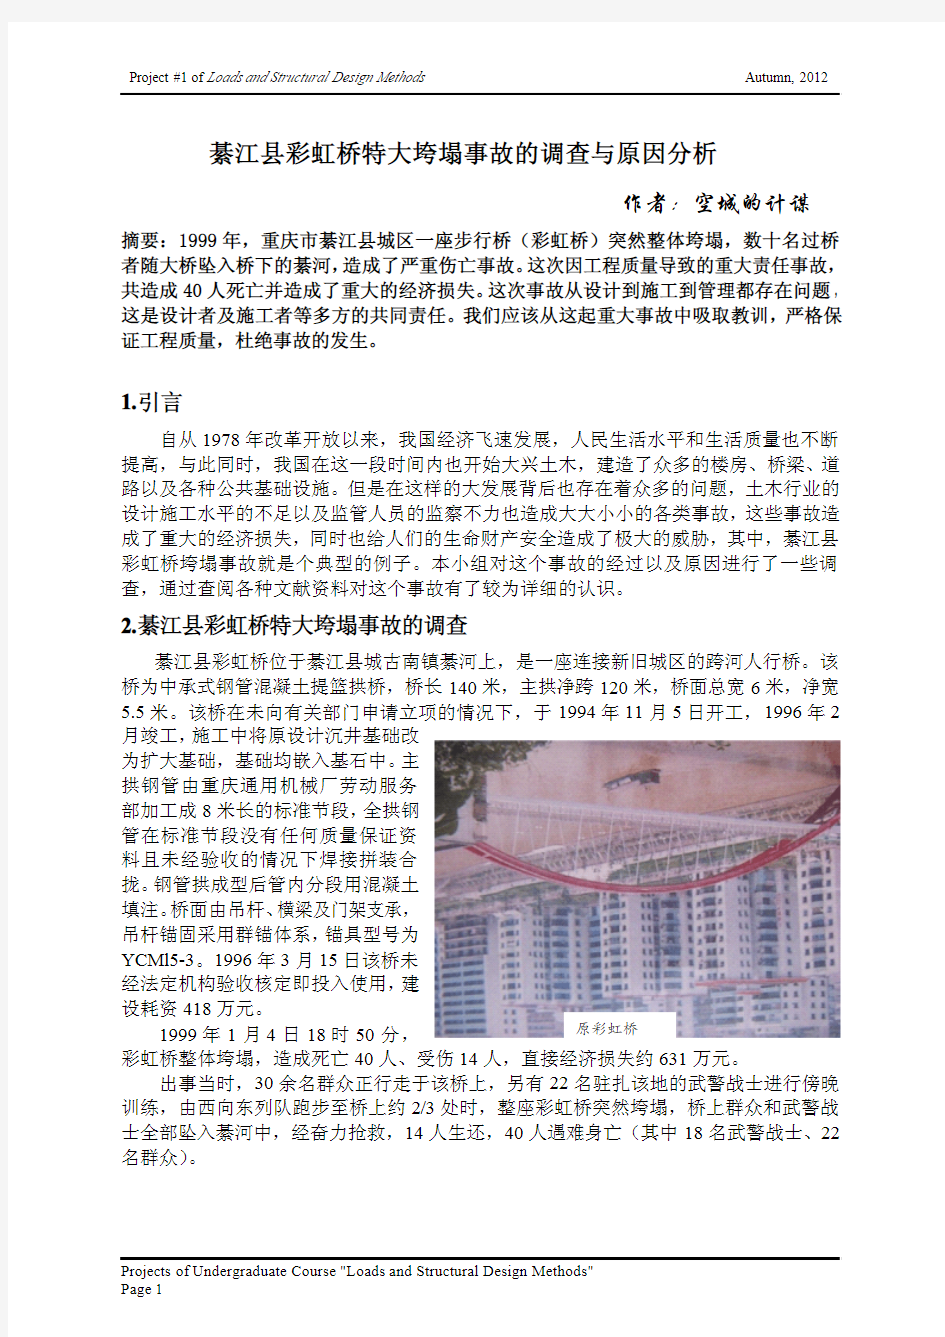 綦江县彩虹桥特大垮塌事故的调查与原因分析